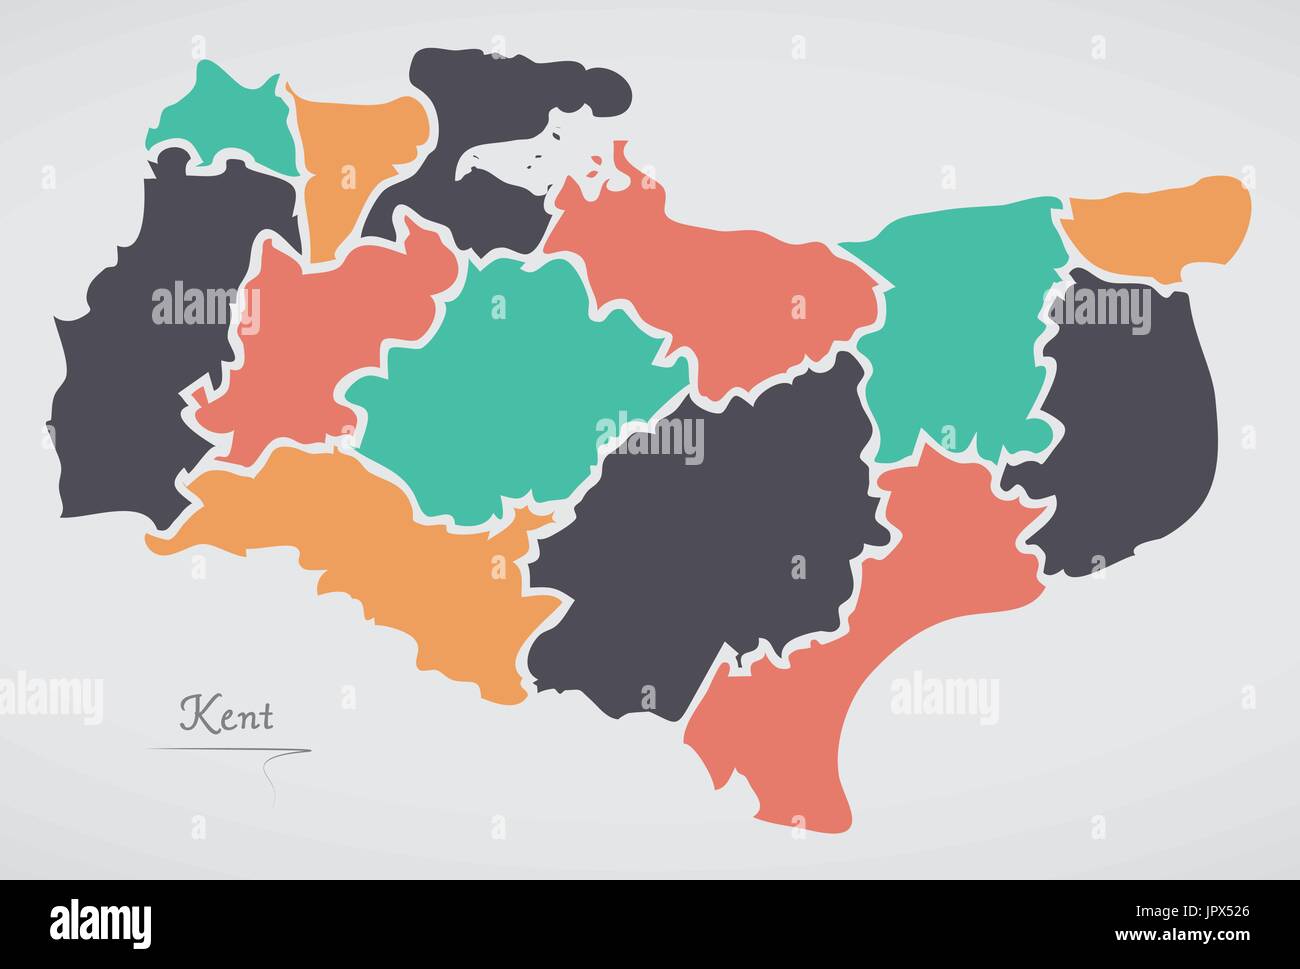 Kent Angleterre Map avec les états et les formes rondes modernes Illustration de Vecteur